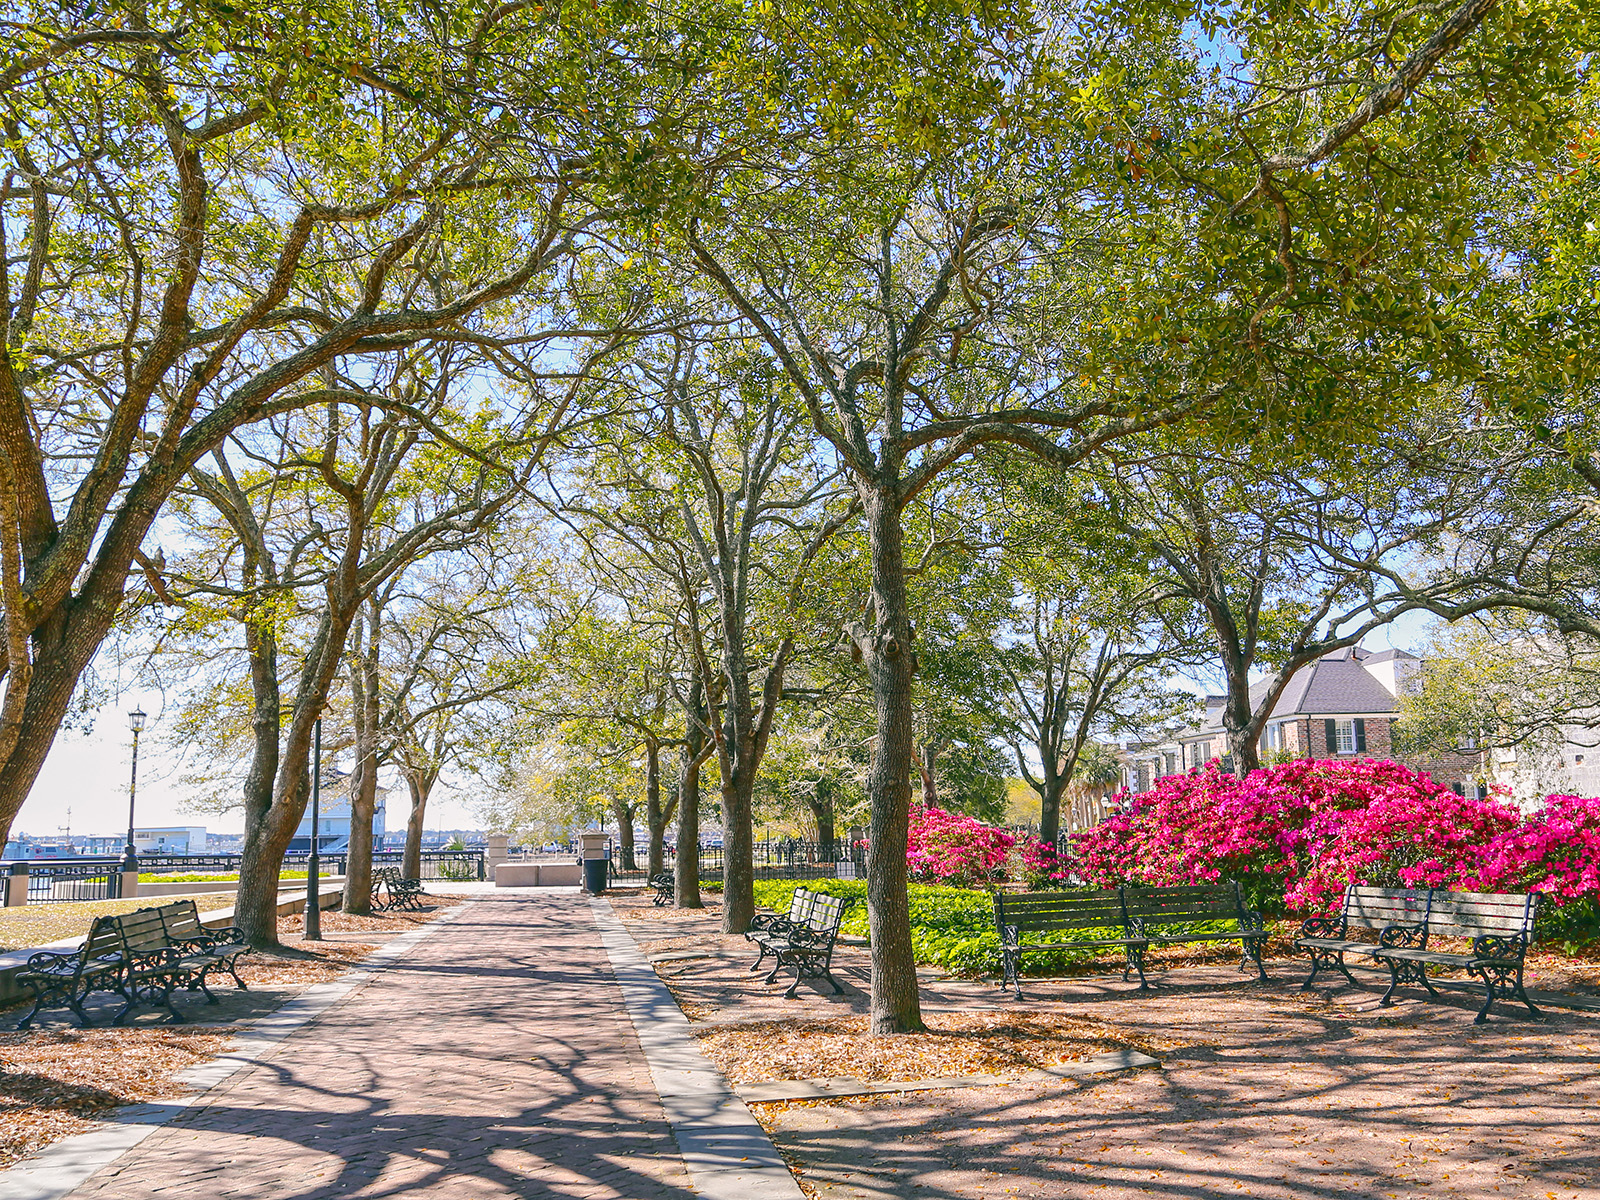 Trees and walkway at Waterfront Park, Charleston